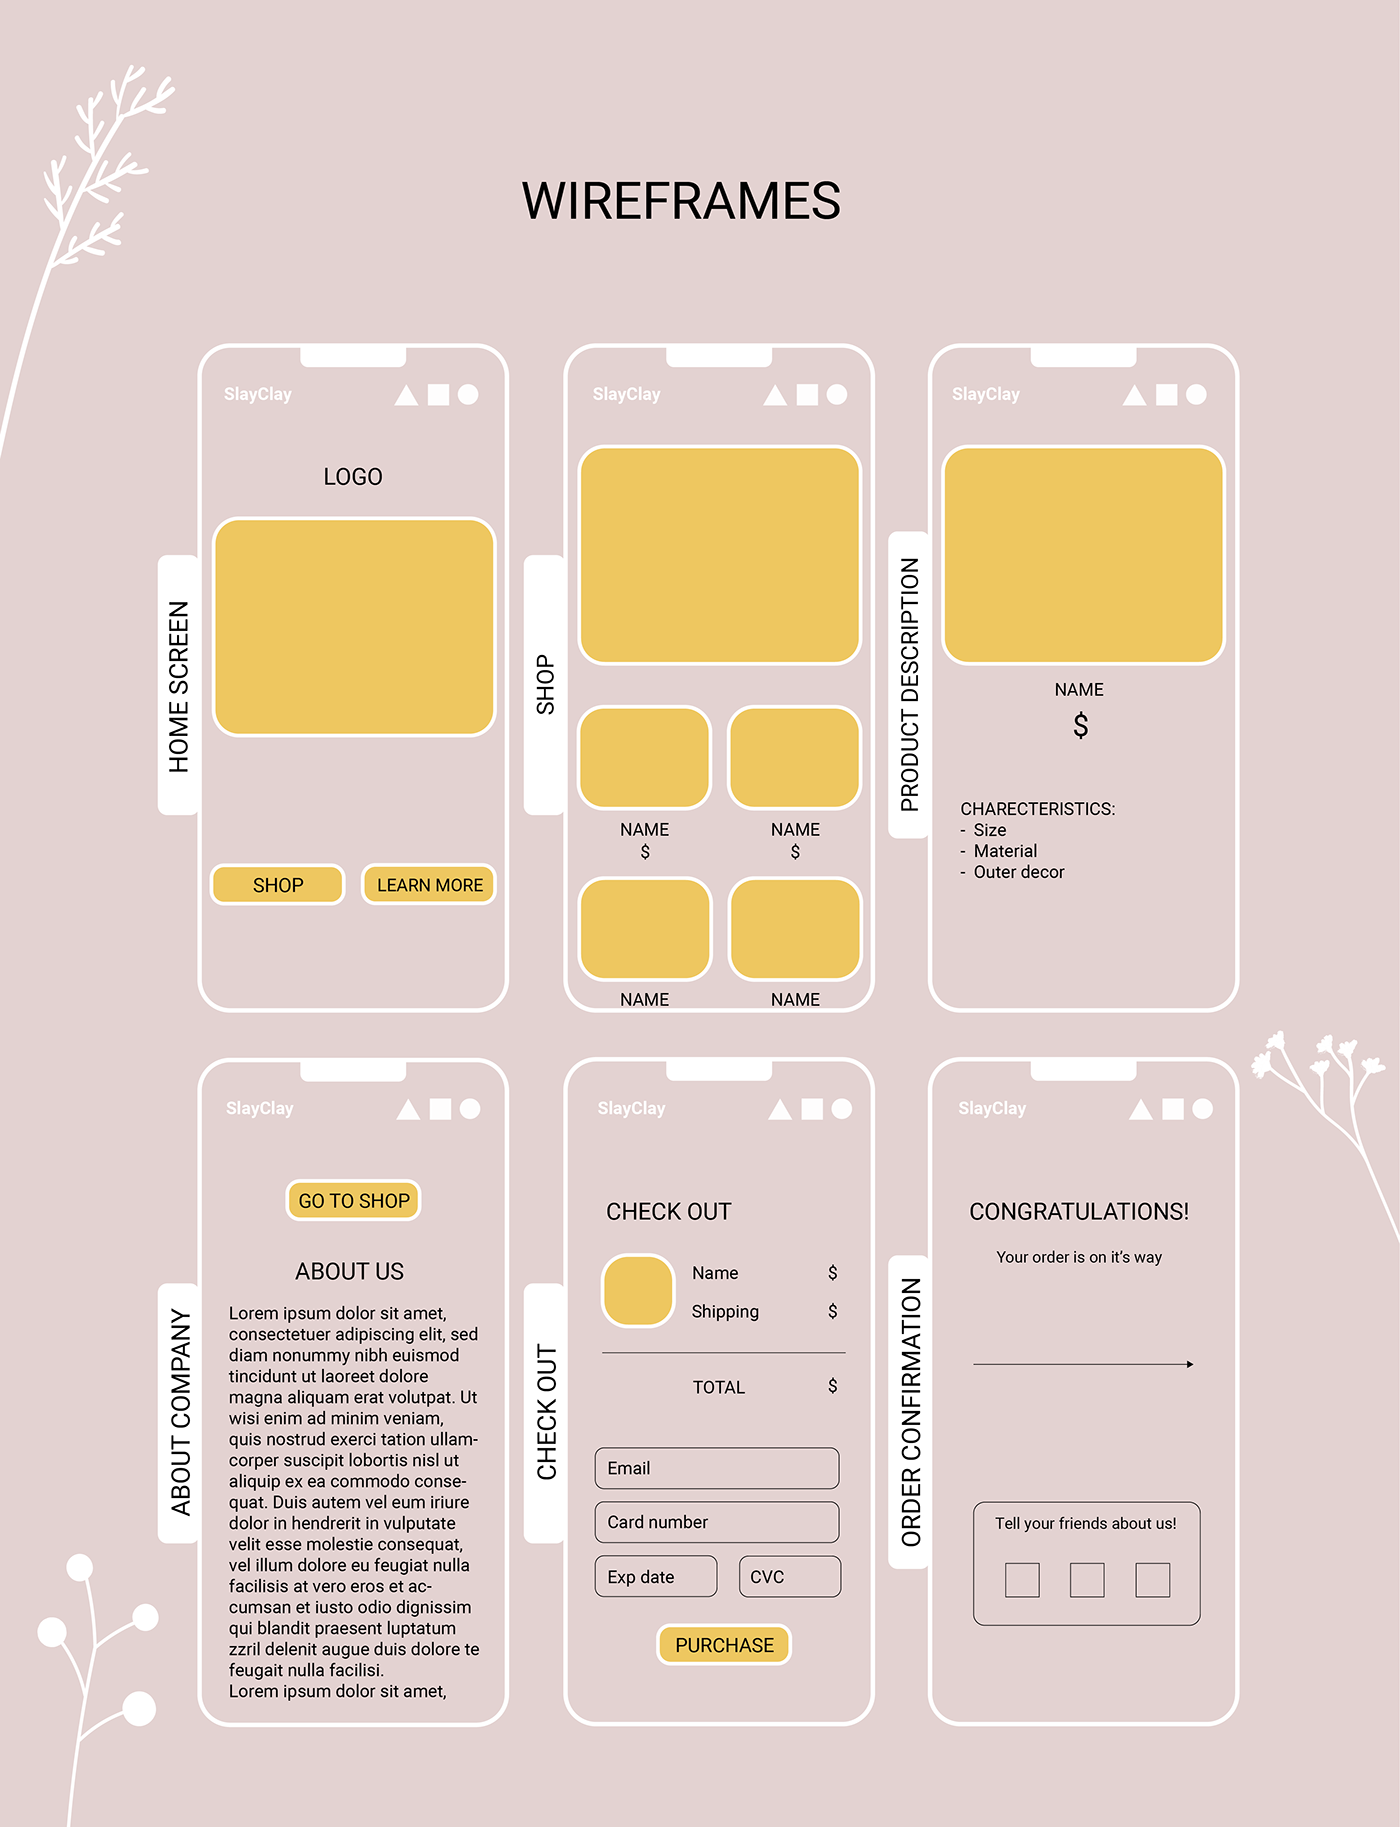 UI/UX ui design Figma Mobile app ux/ui user experience UX design Case Study user interface app design